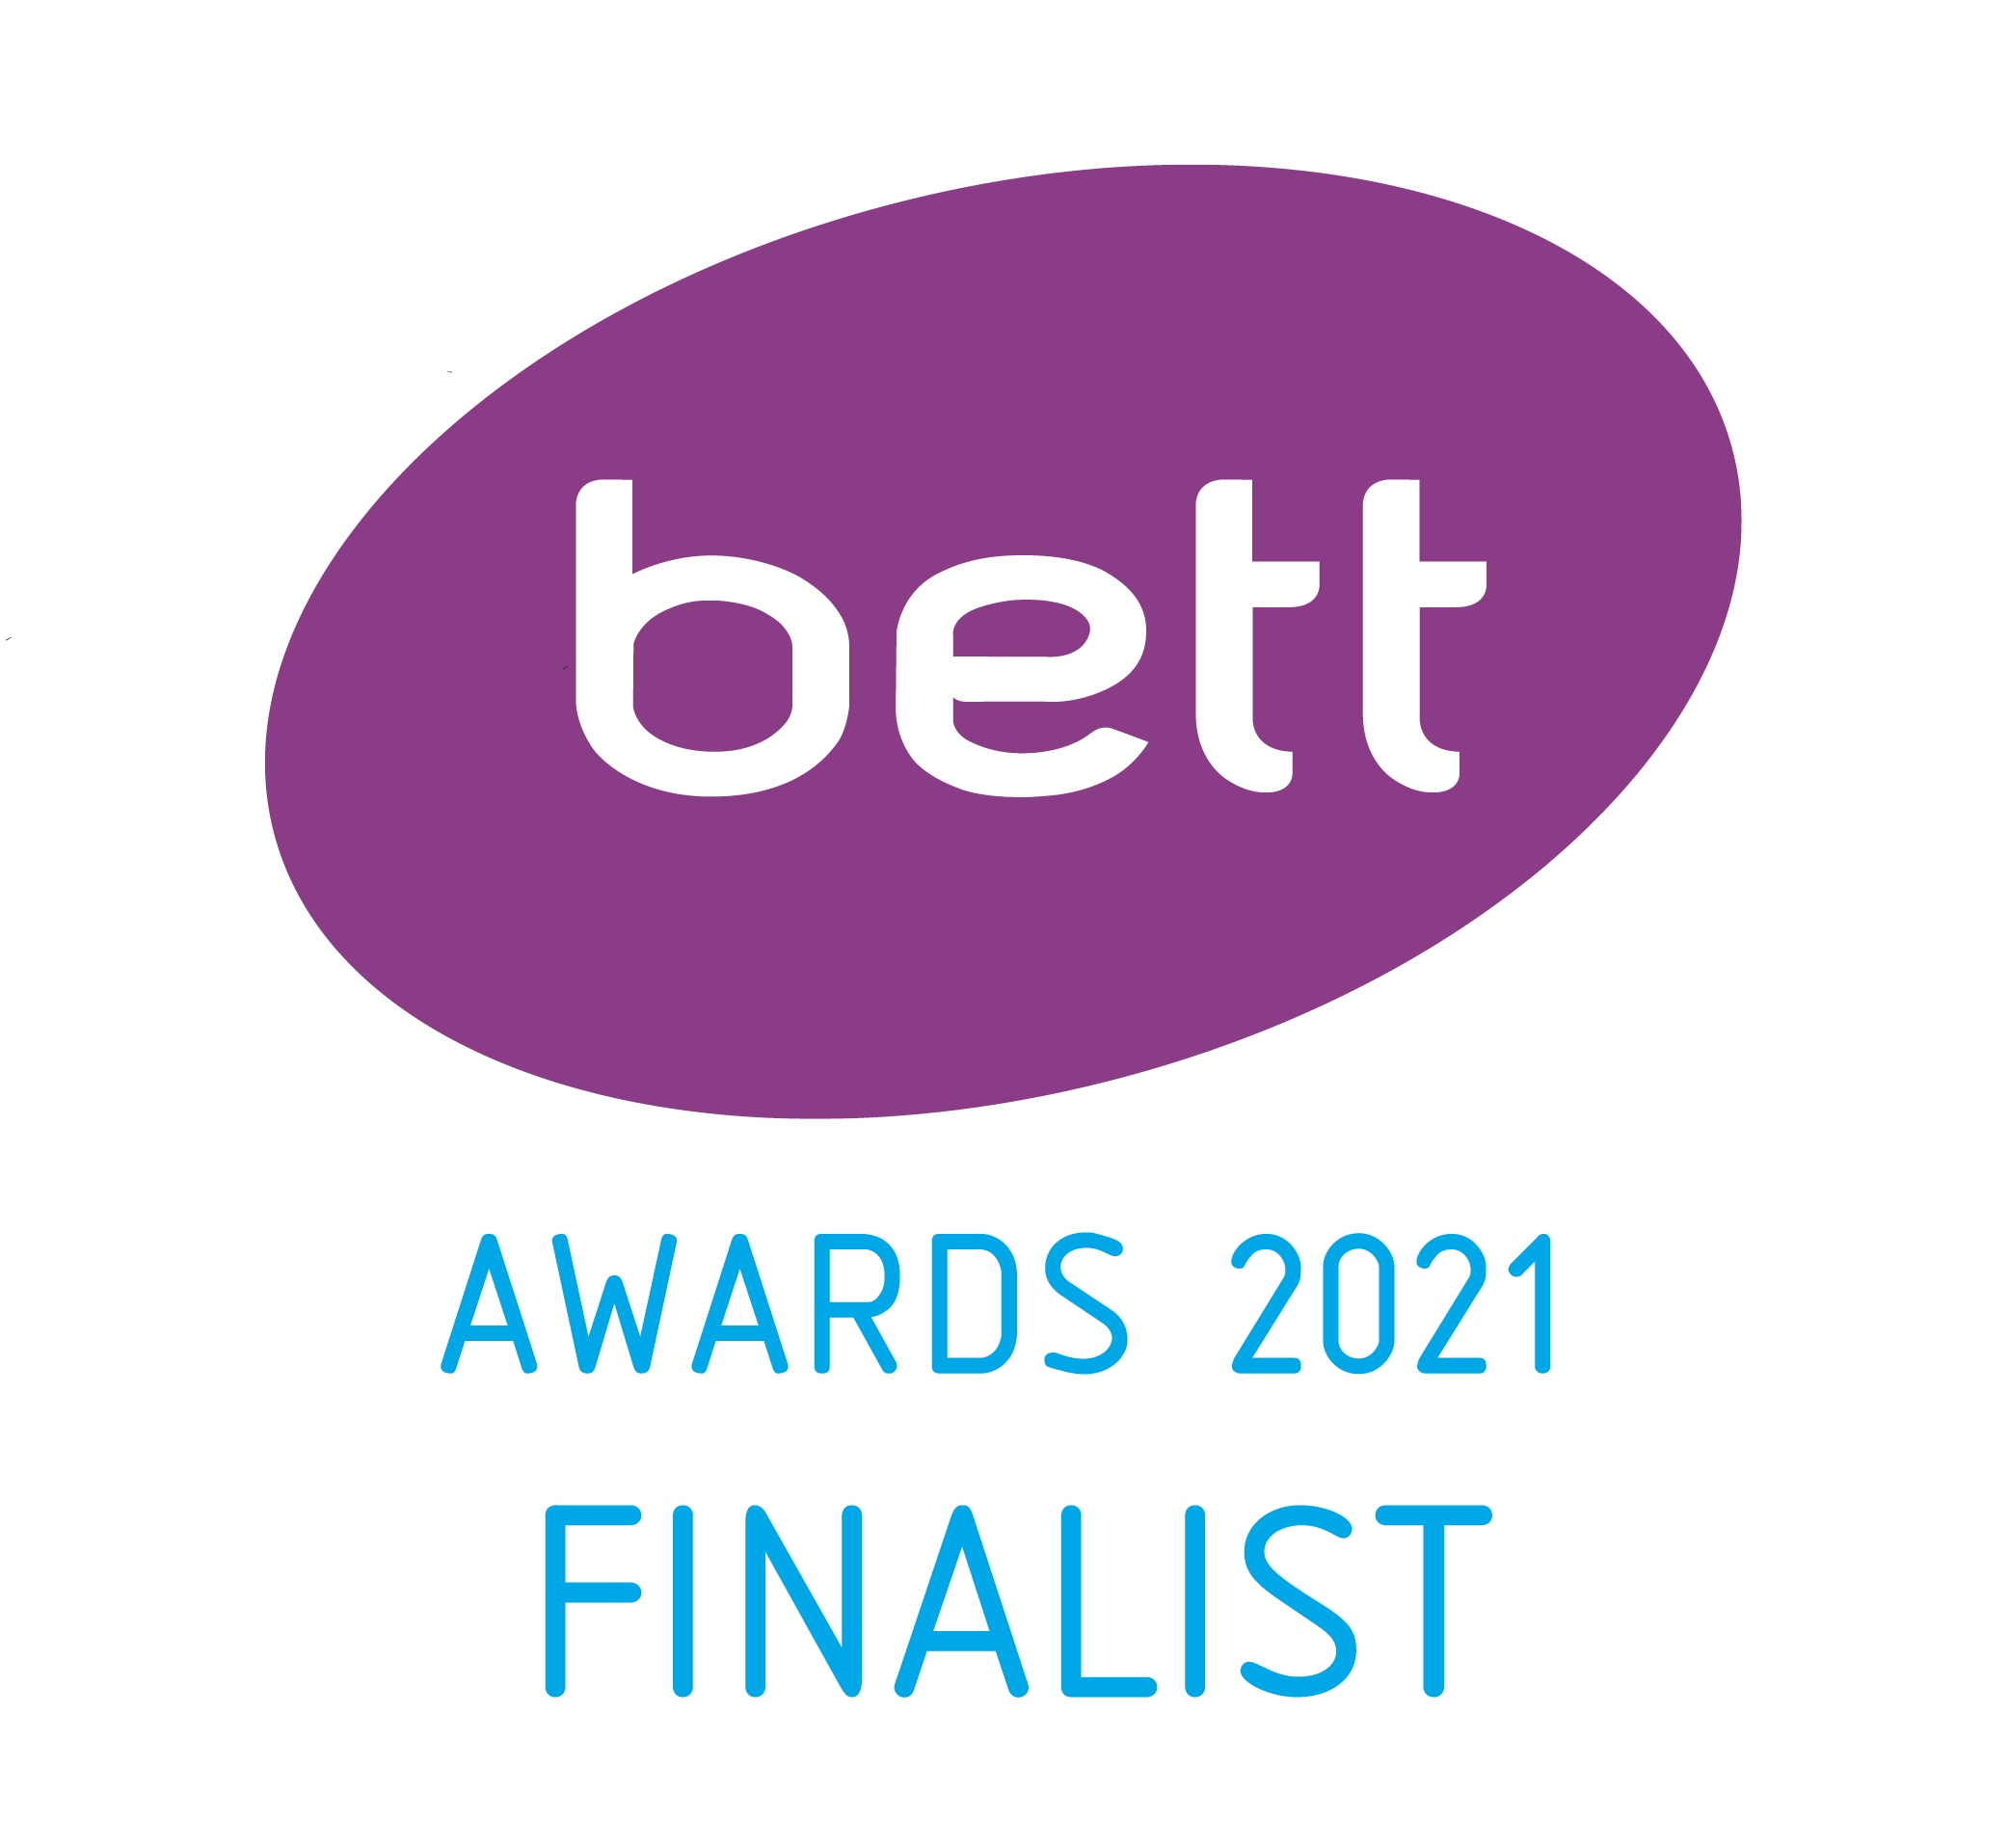 Bett 2021 Awards Finalist Logo transparent (1)